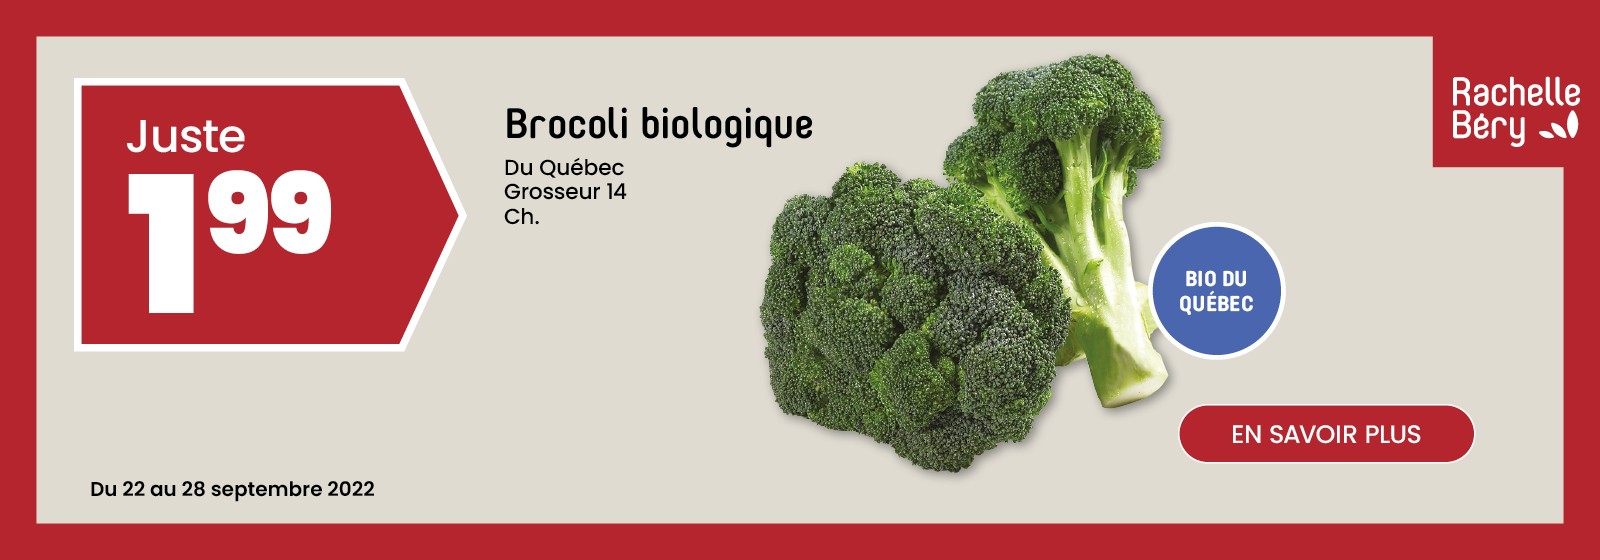 Texte à lire 'Achetez des Brocoli biologique de 14 grosseur pour seulement 1.99 $ du 22 au 28 septembre 2022 chez Rachelle Bery au Québec. Pour 'En savoir plus', cliquez sur le bouton ci-dessous'.